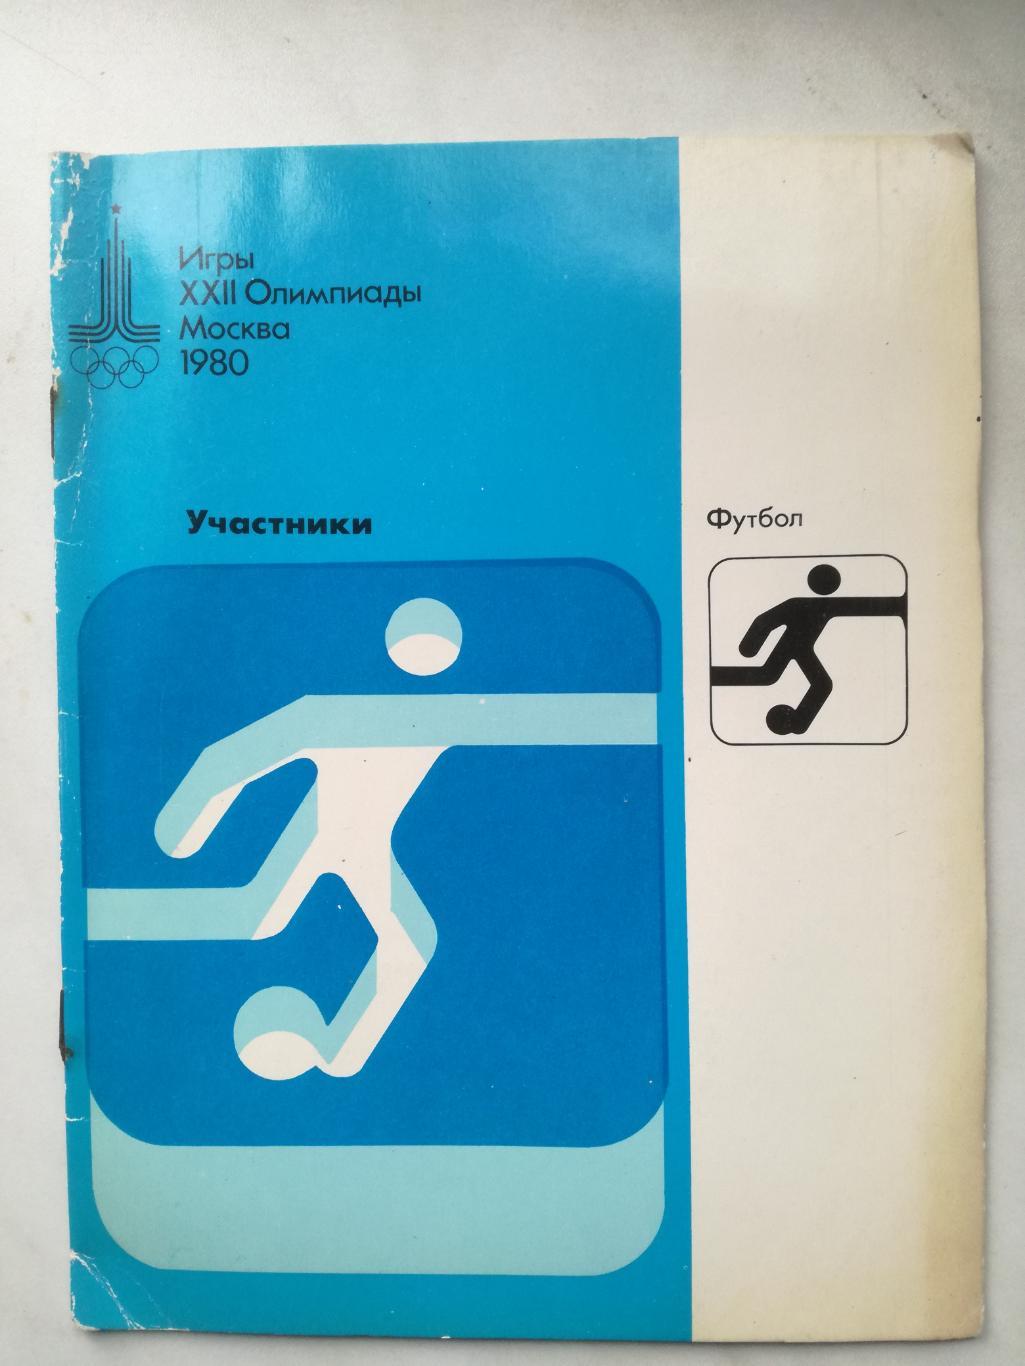 Игры XXII Олимпиады. Москва 1980. Участники